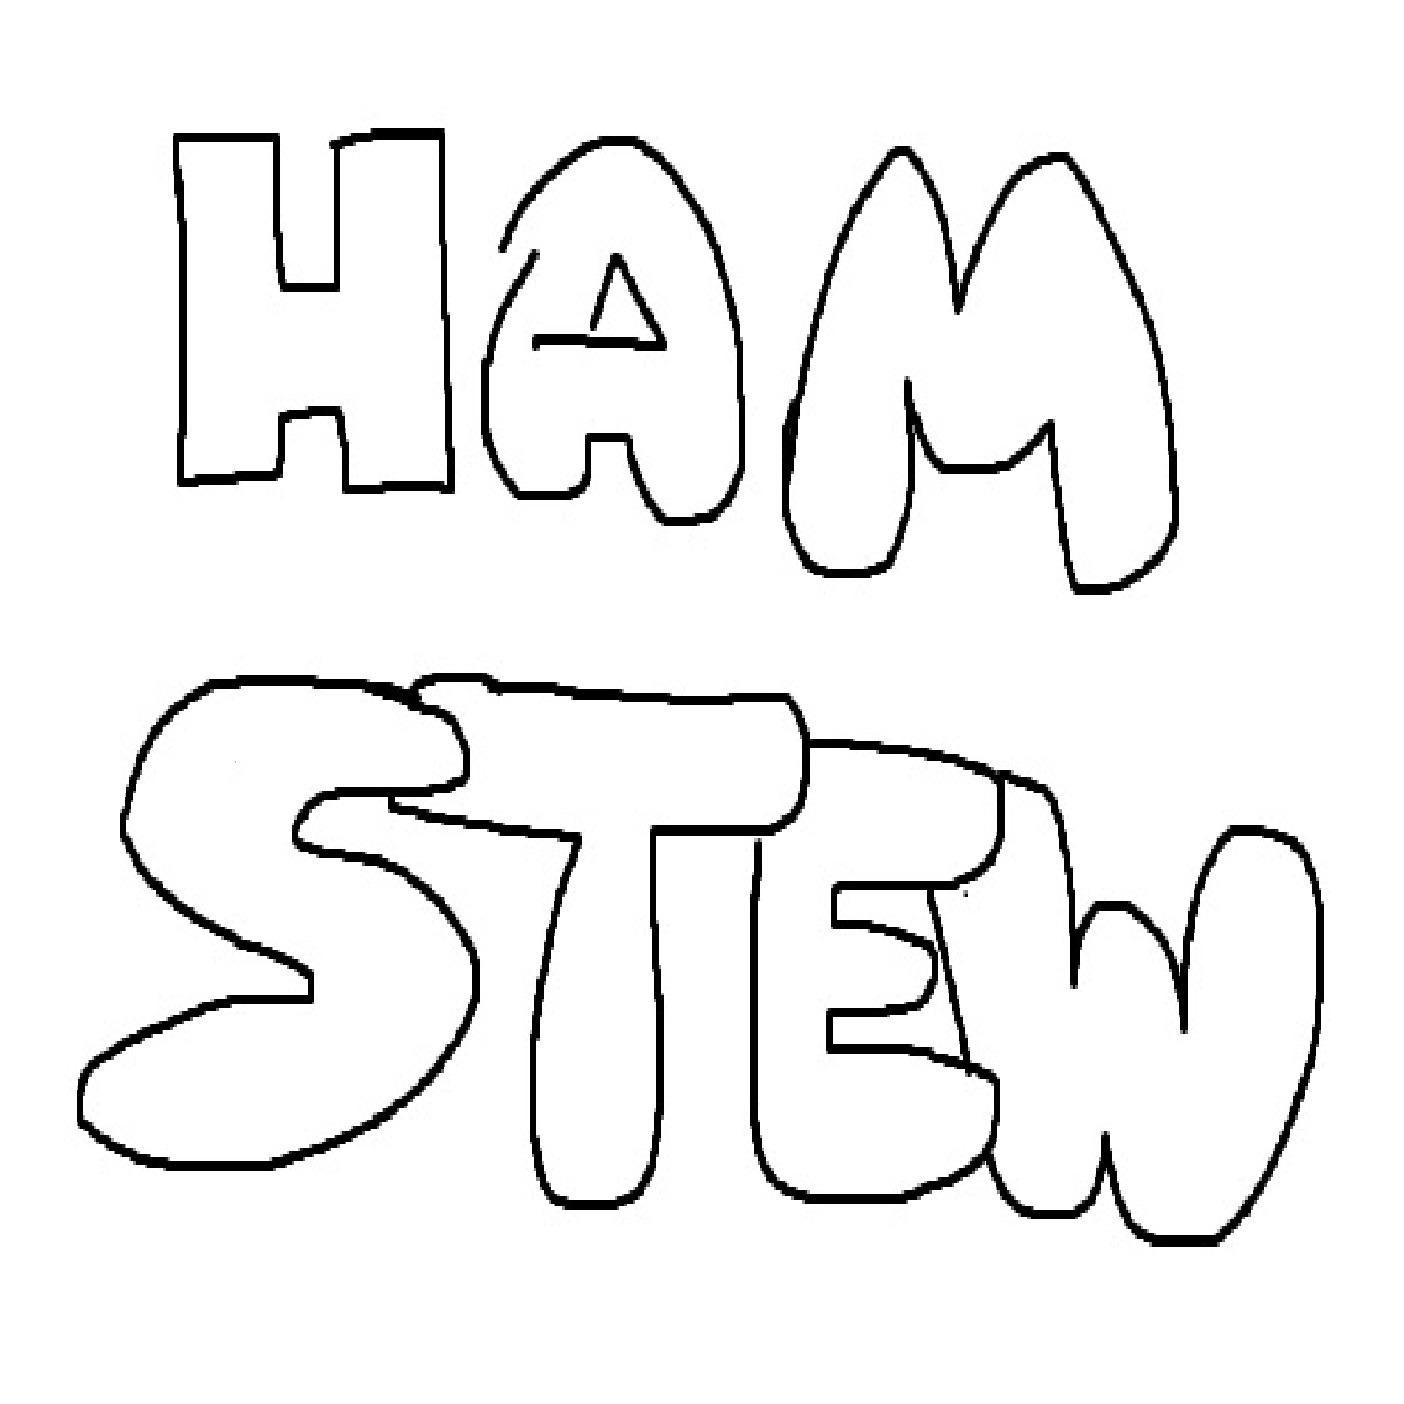 Ham Stew : The Daniel & Reagan Show